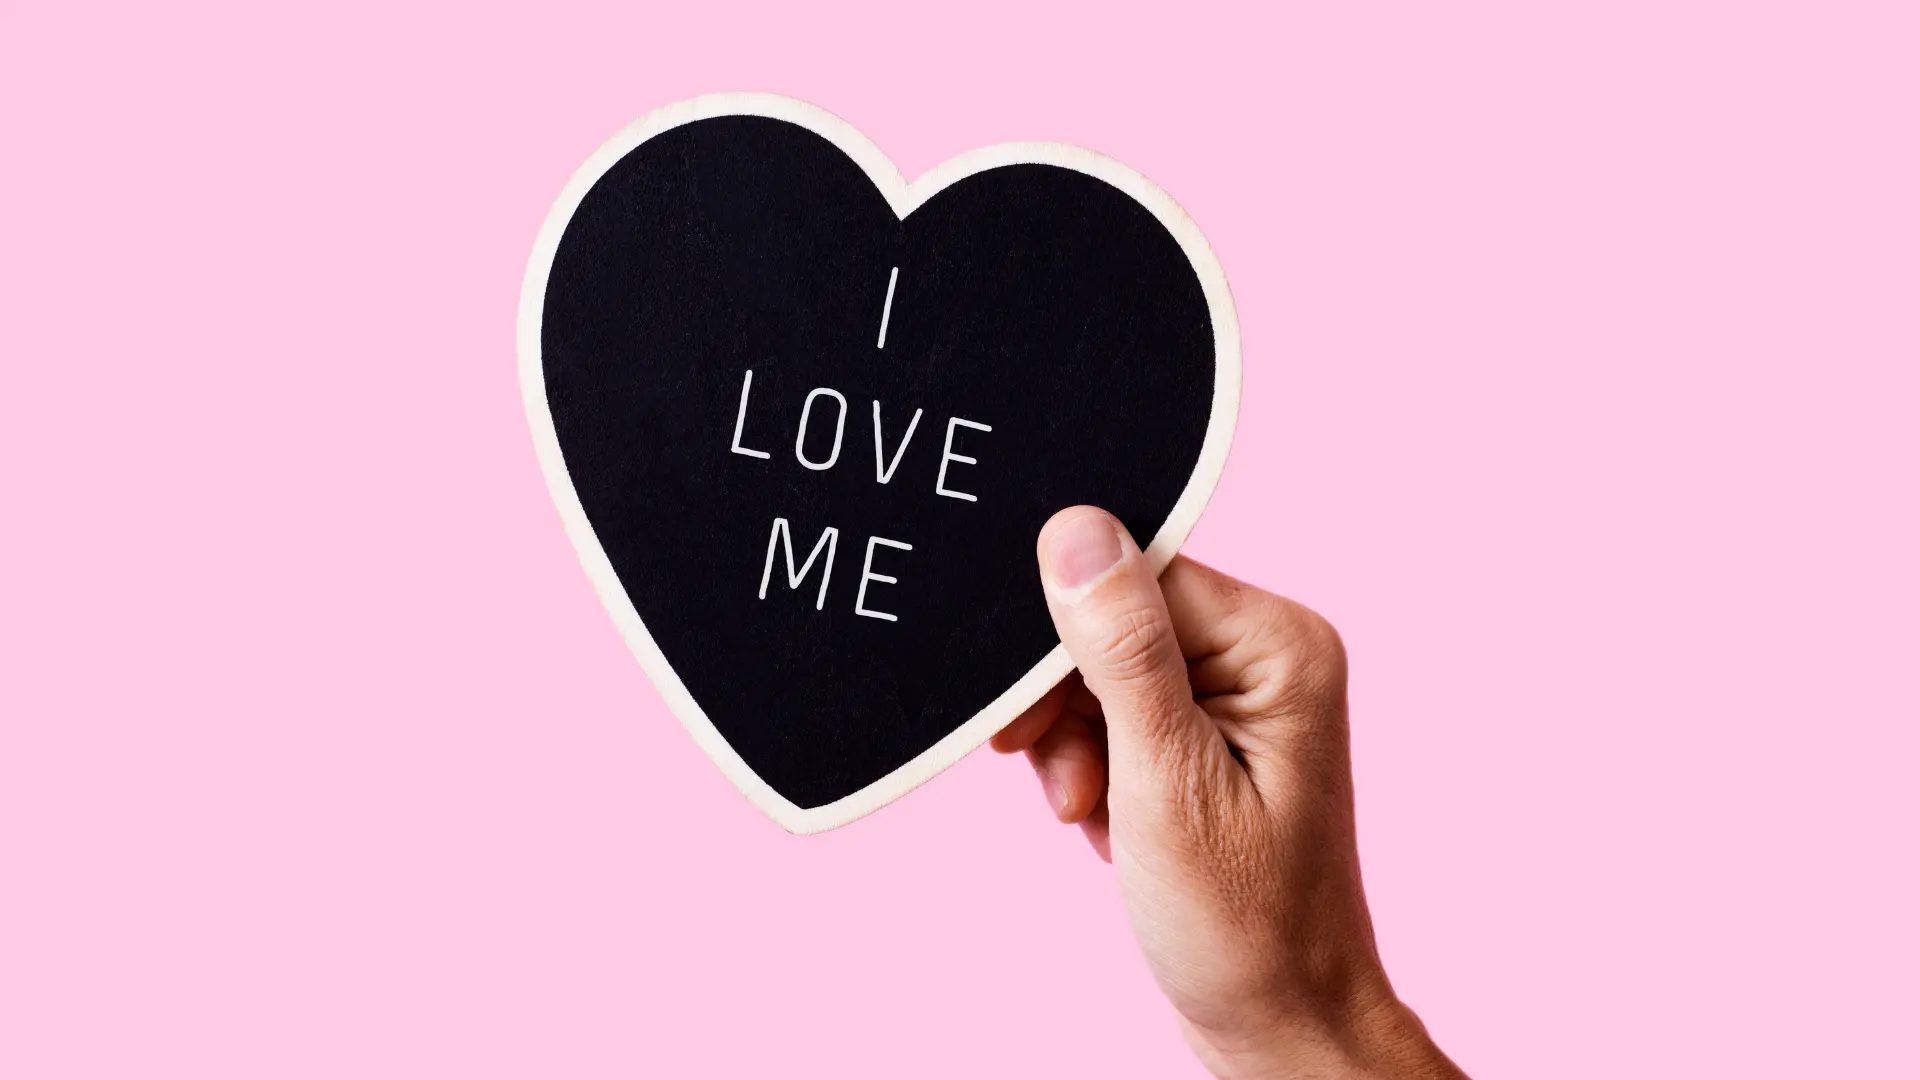 Une main tient un cœur en papier sur lequel il est écrit "i love me" pour mettre en avant la confiance en soi.